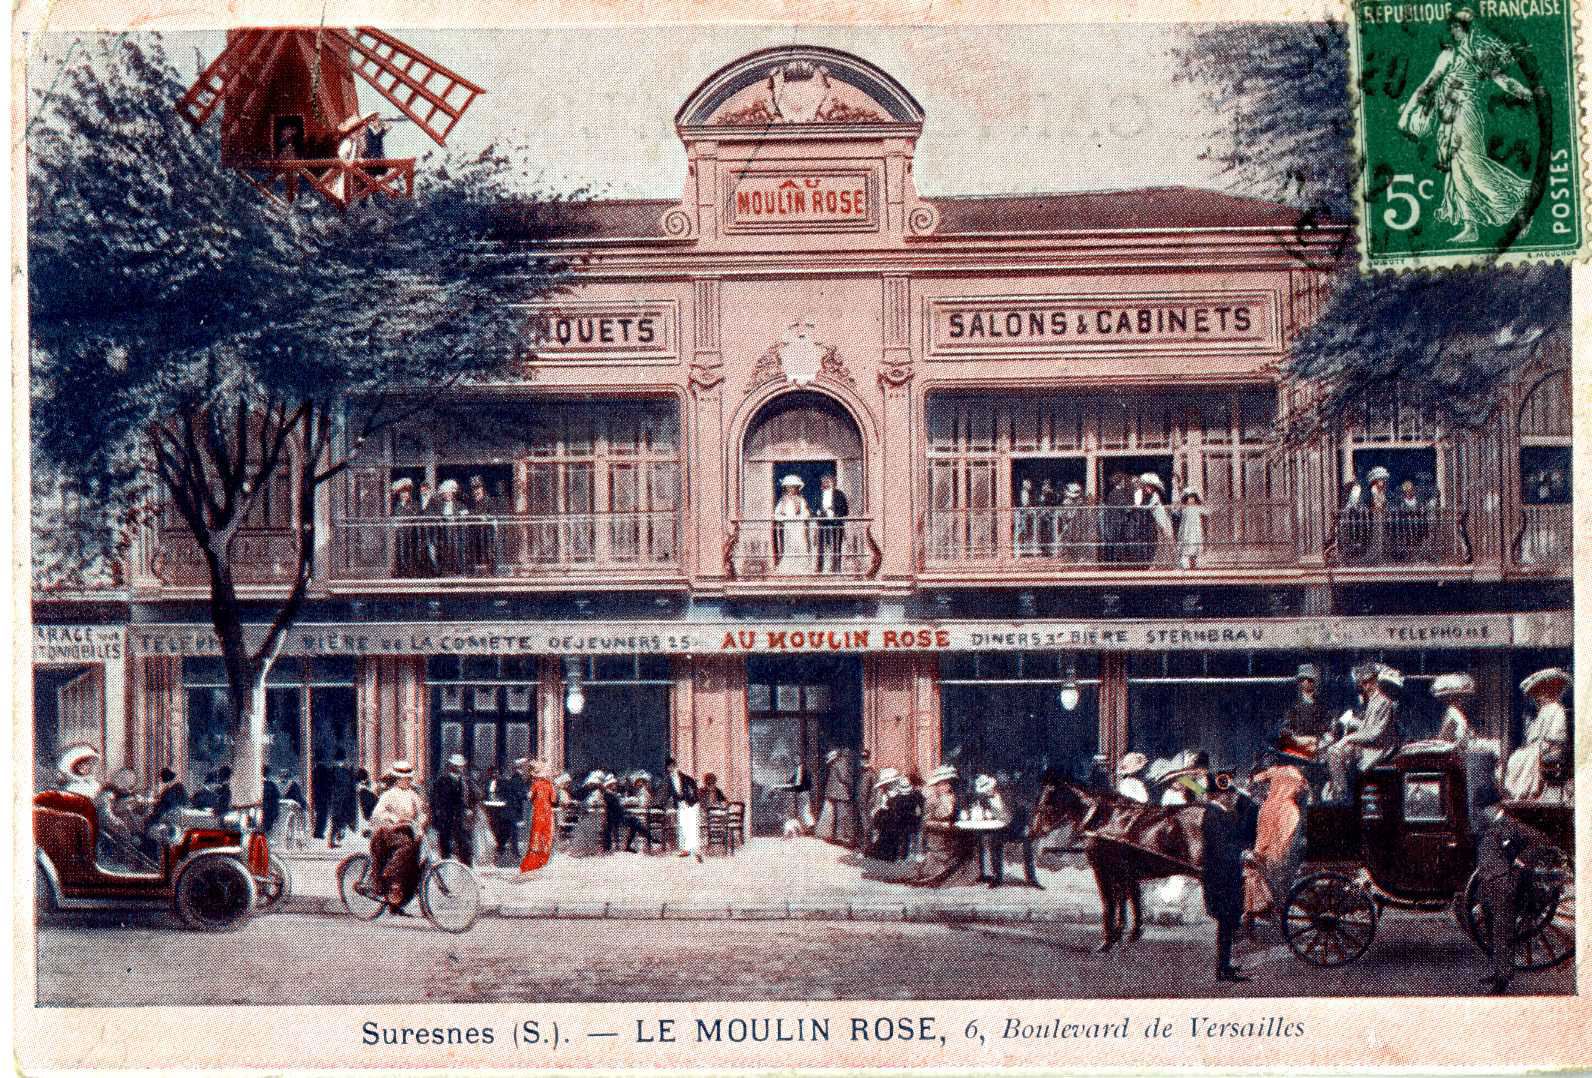 Suresnes - Le Moulin Rose (6, Boulevard de Versailles)